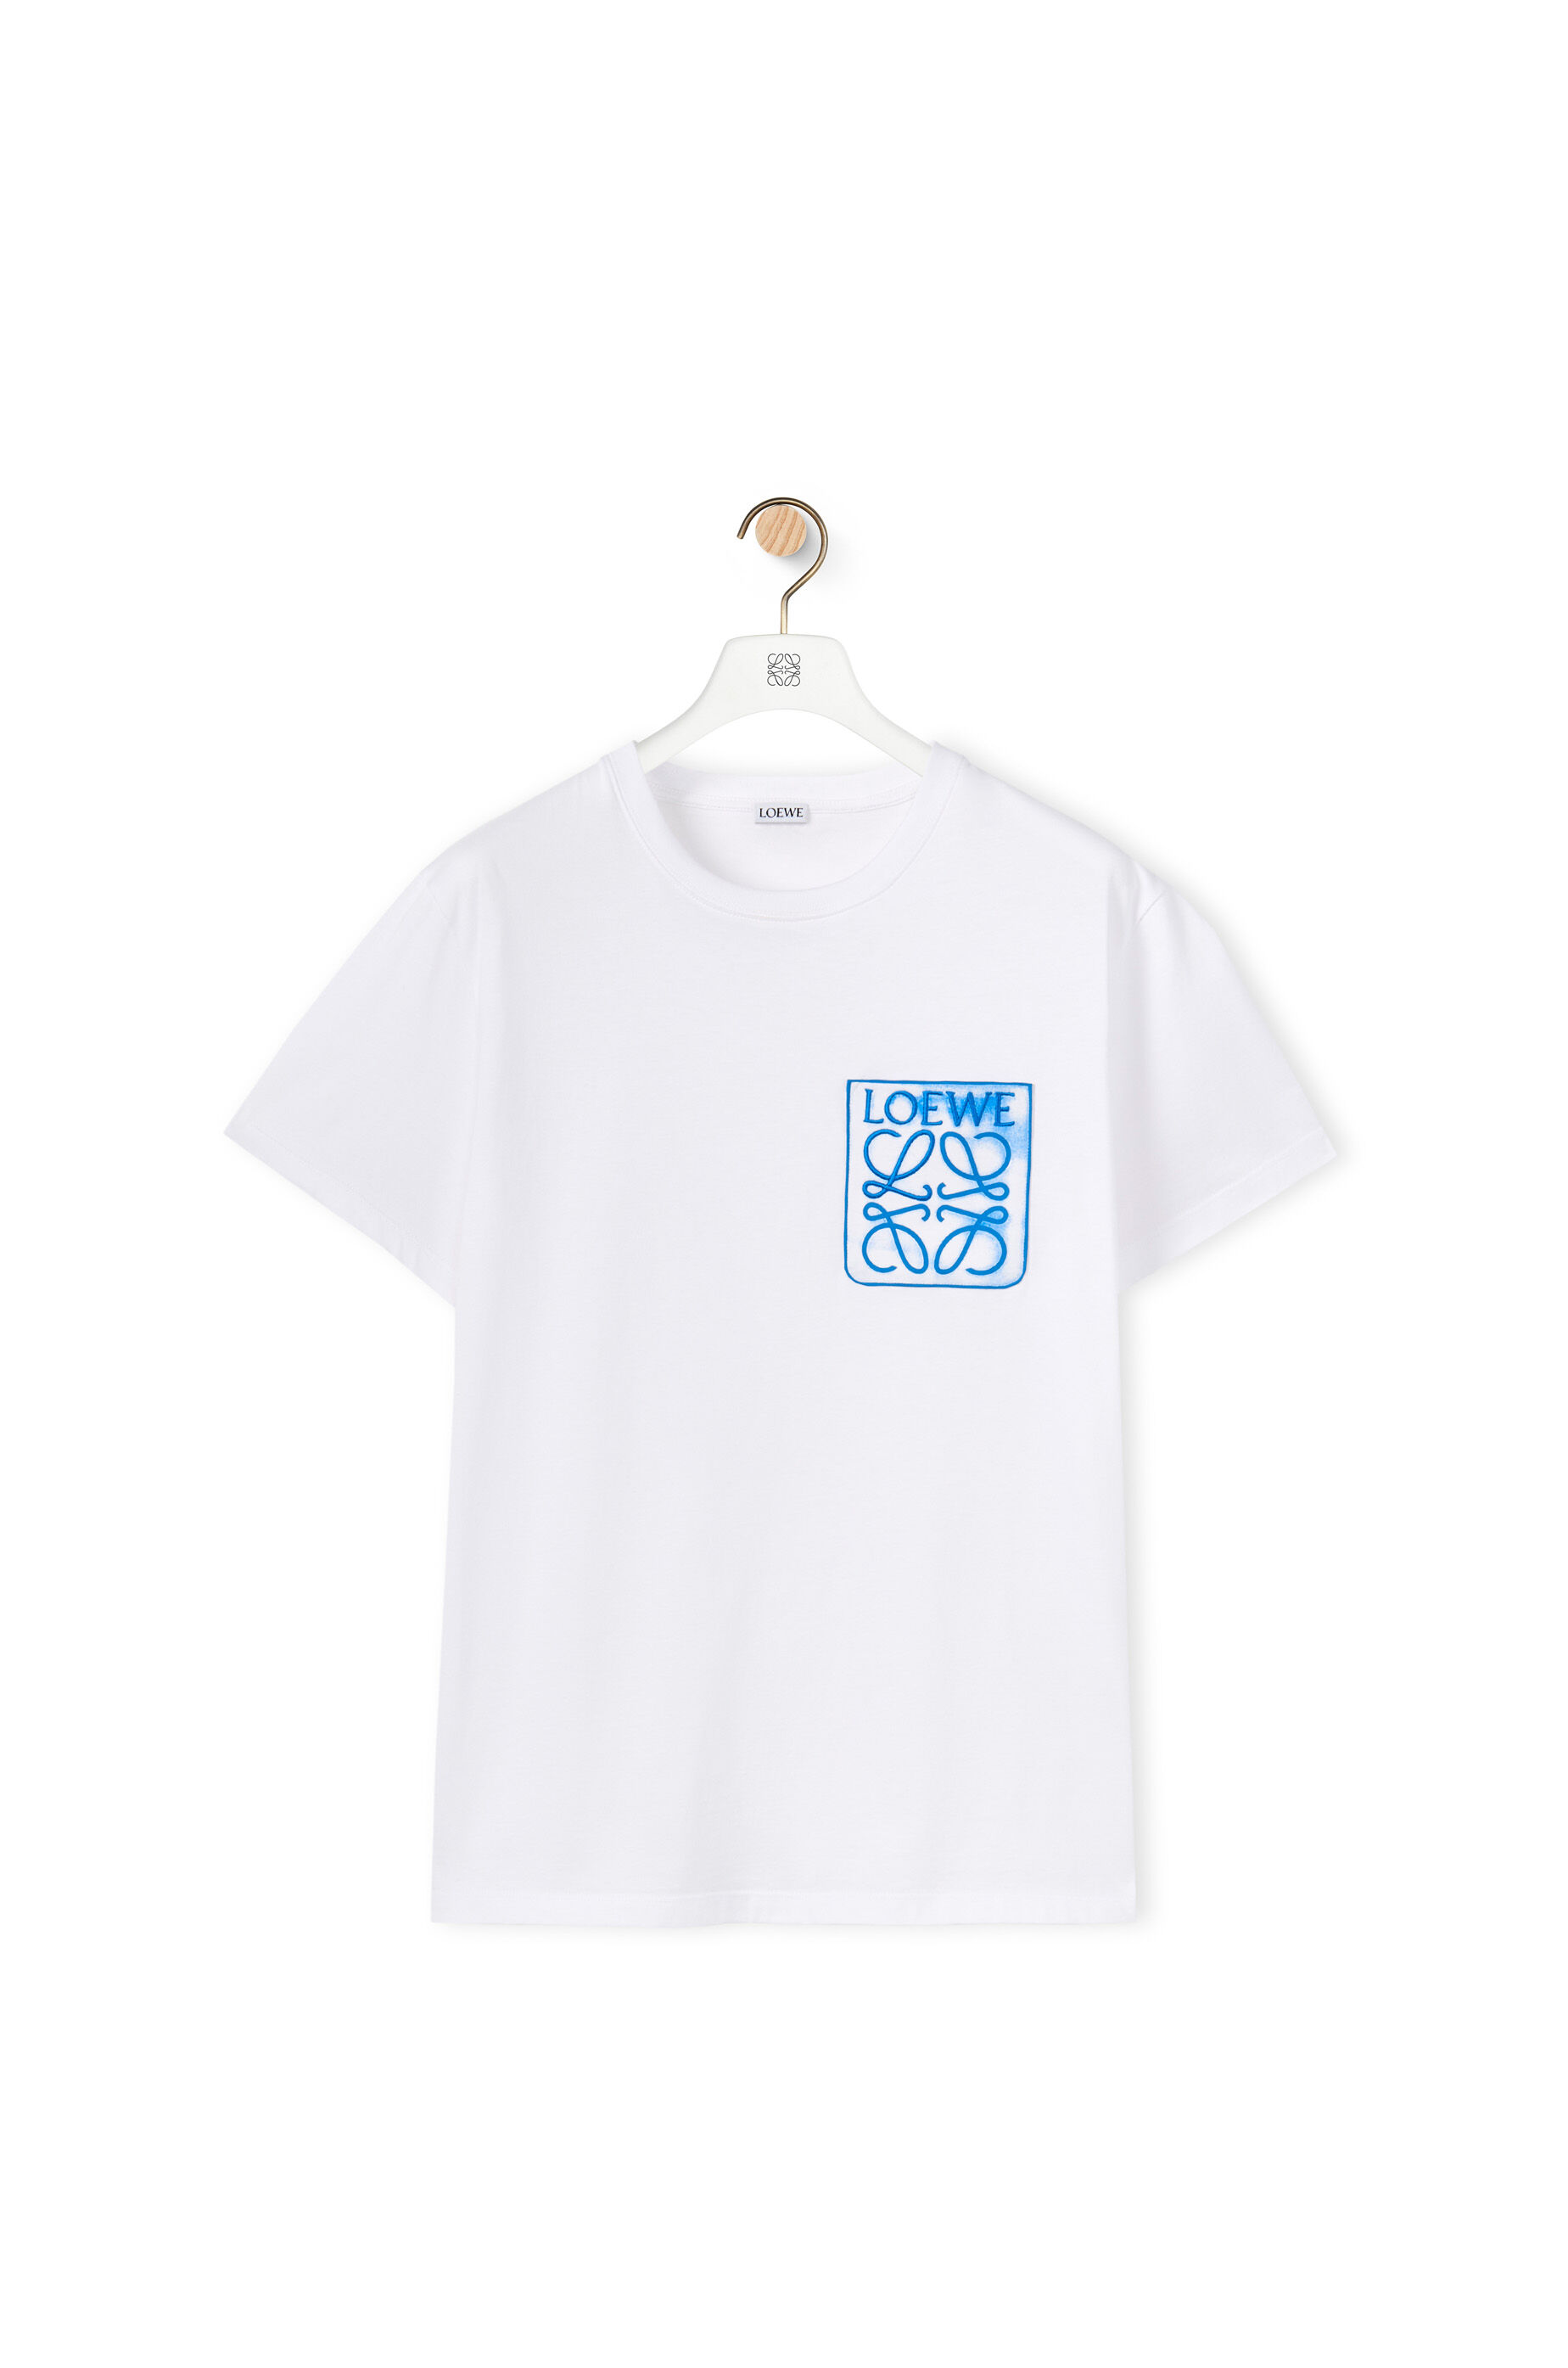 アナグラム フェイクポケット Tシャツ (コットン) ホワイト - LOEWE